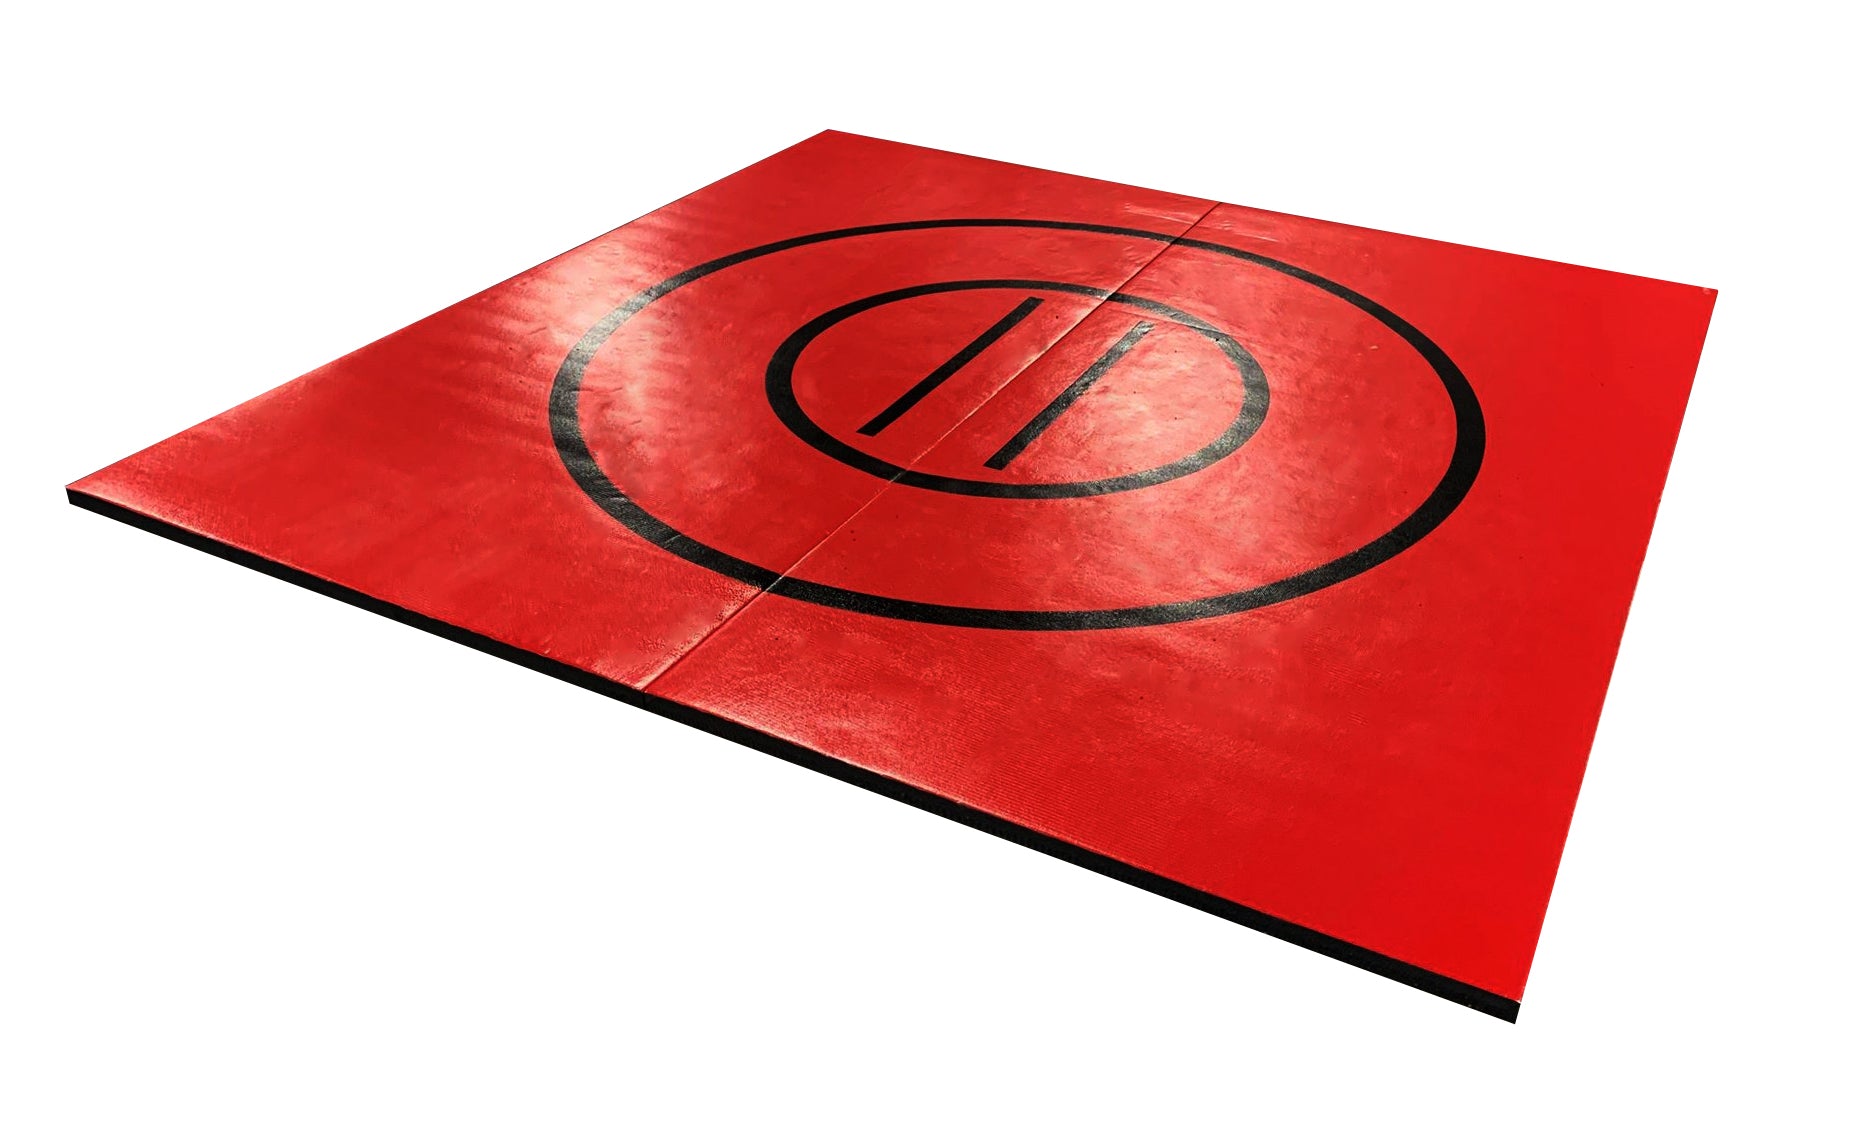 red and black jiu jitsu mat, jiu jitsu grappling mat